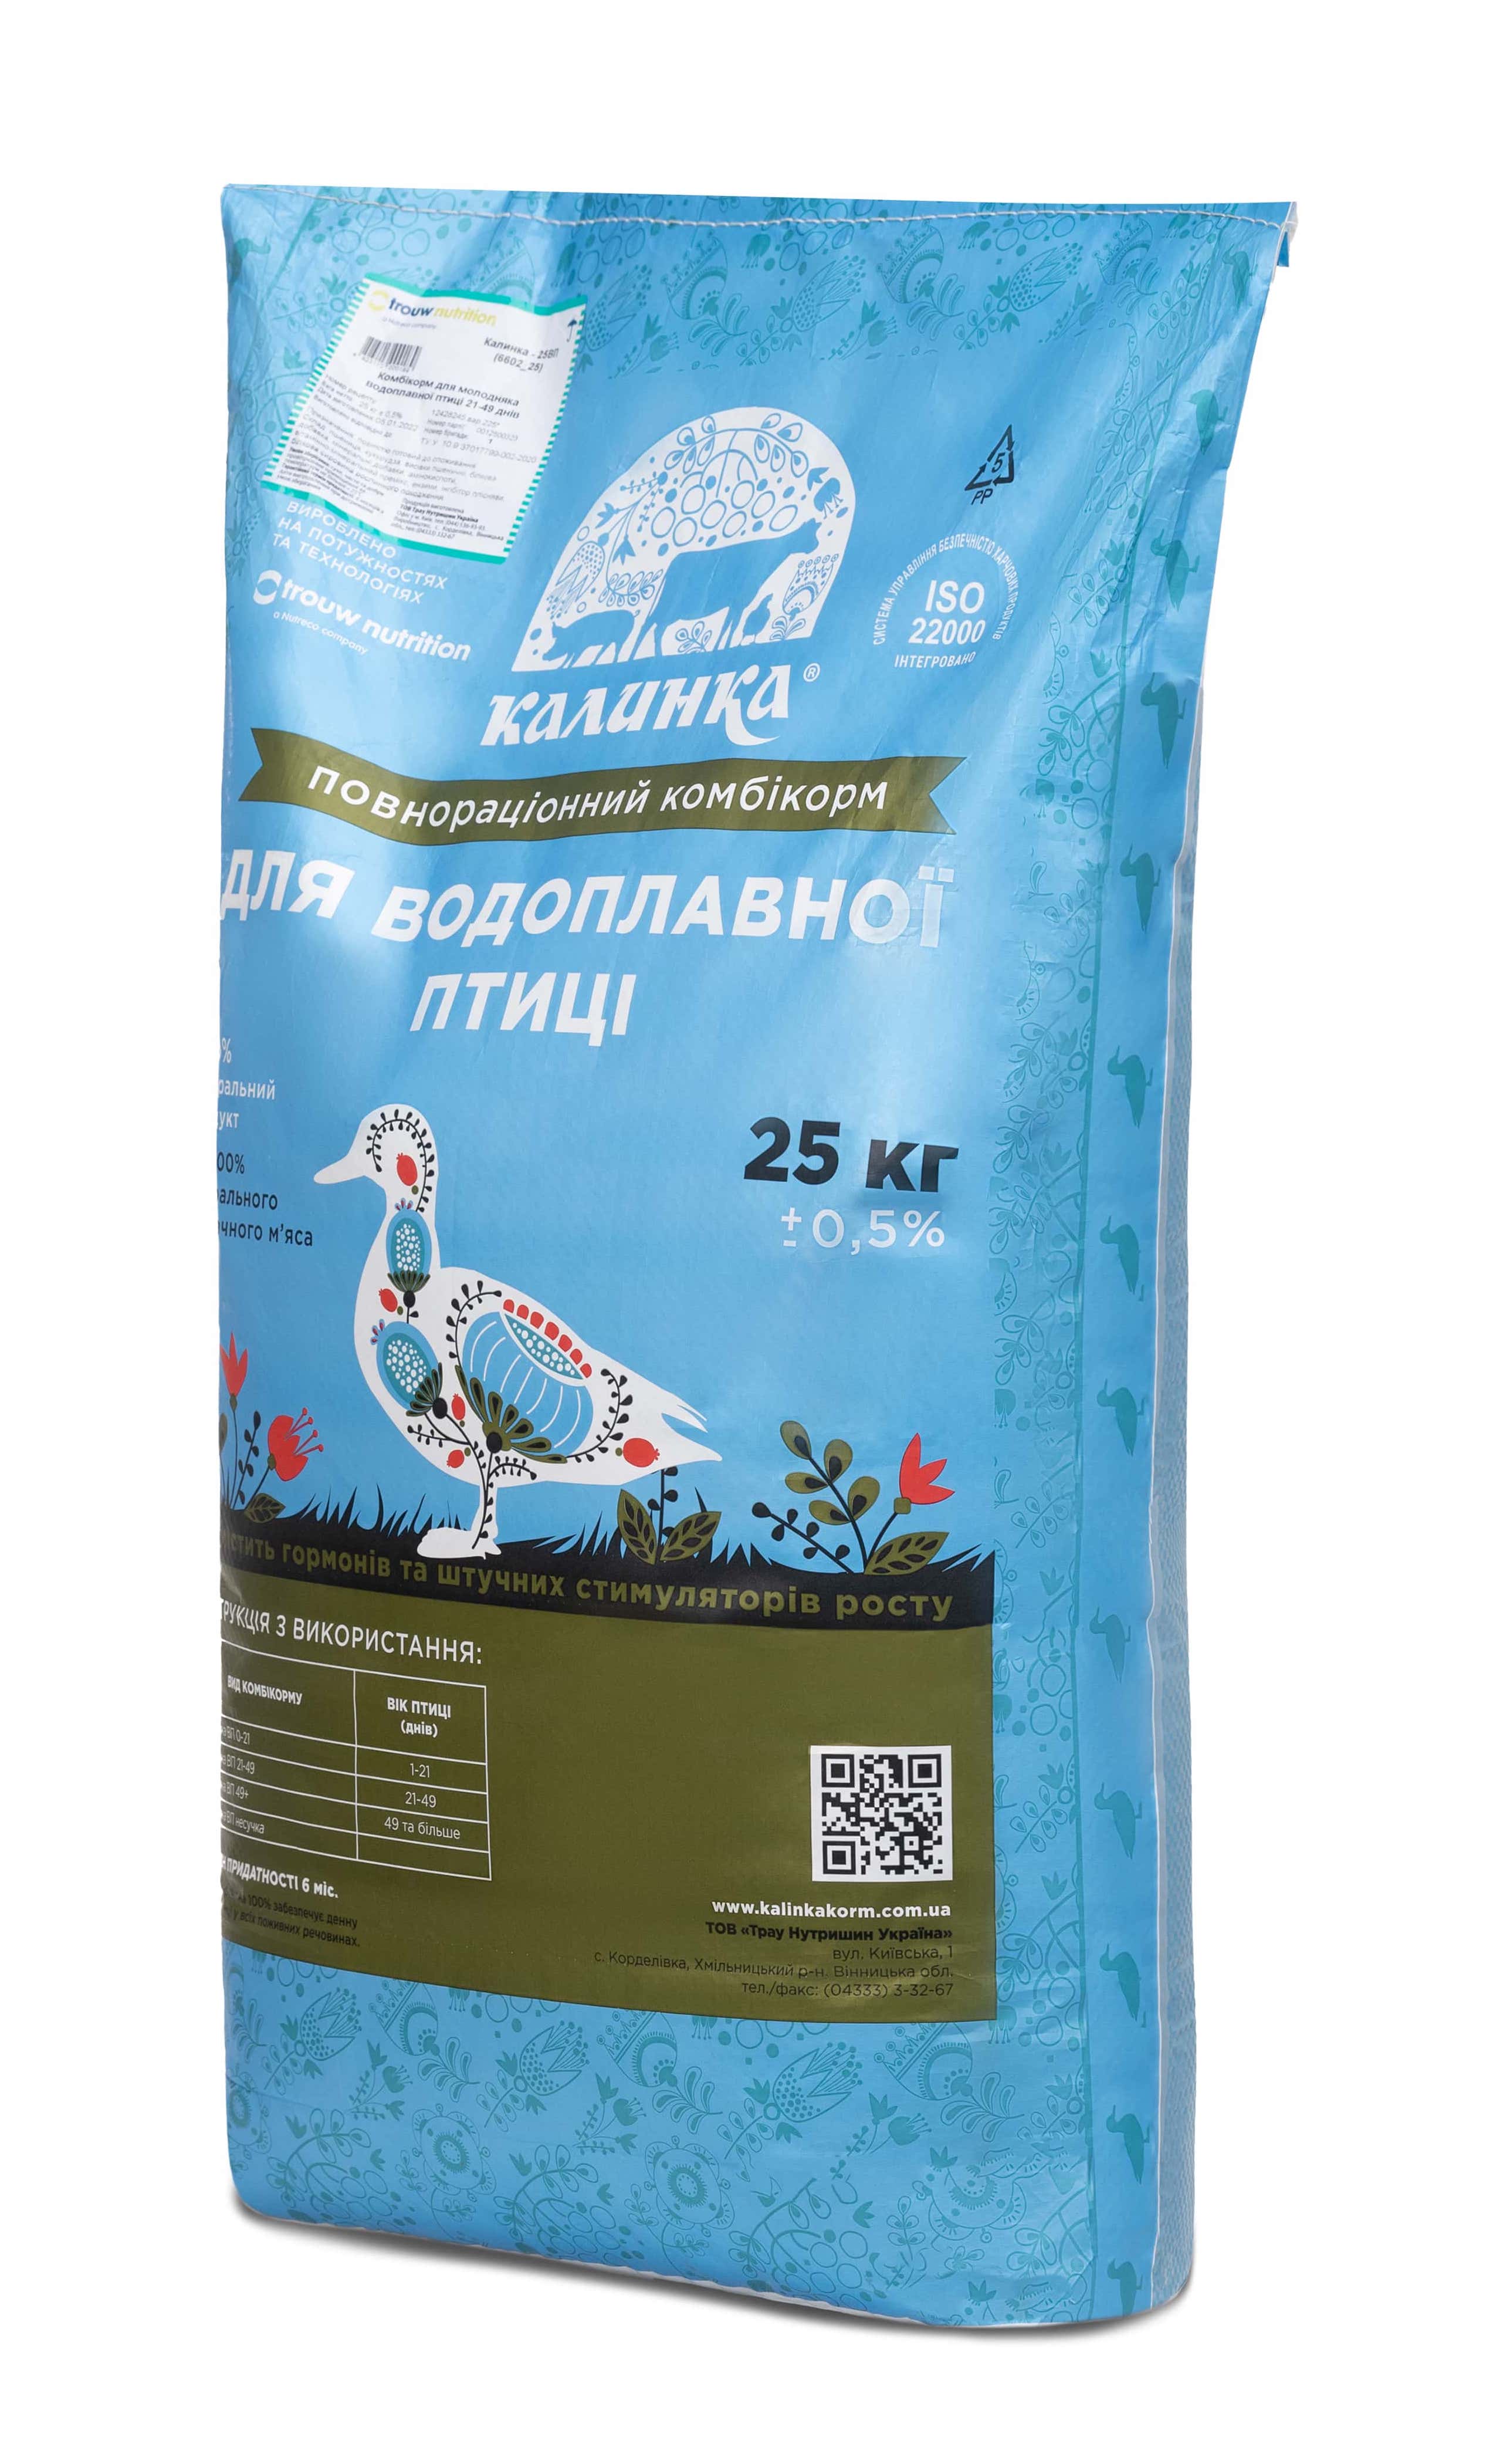 Калинка-25 КТ 30% ВП несучка (6621), 25 кг